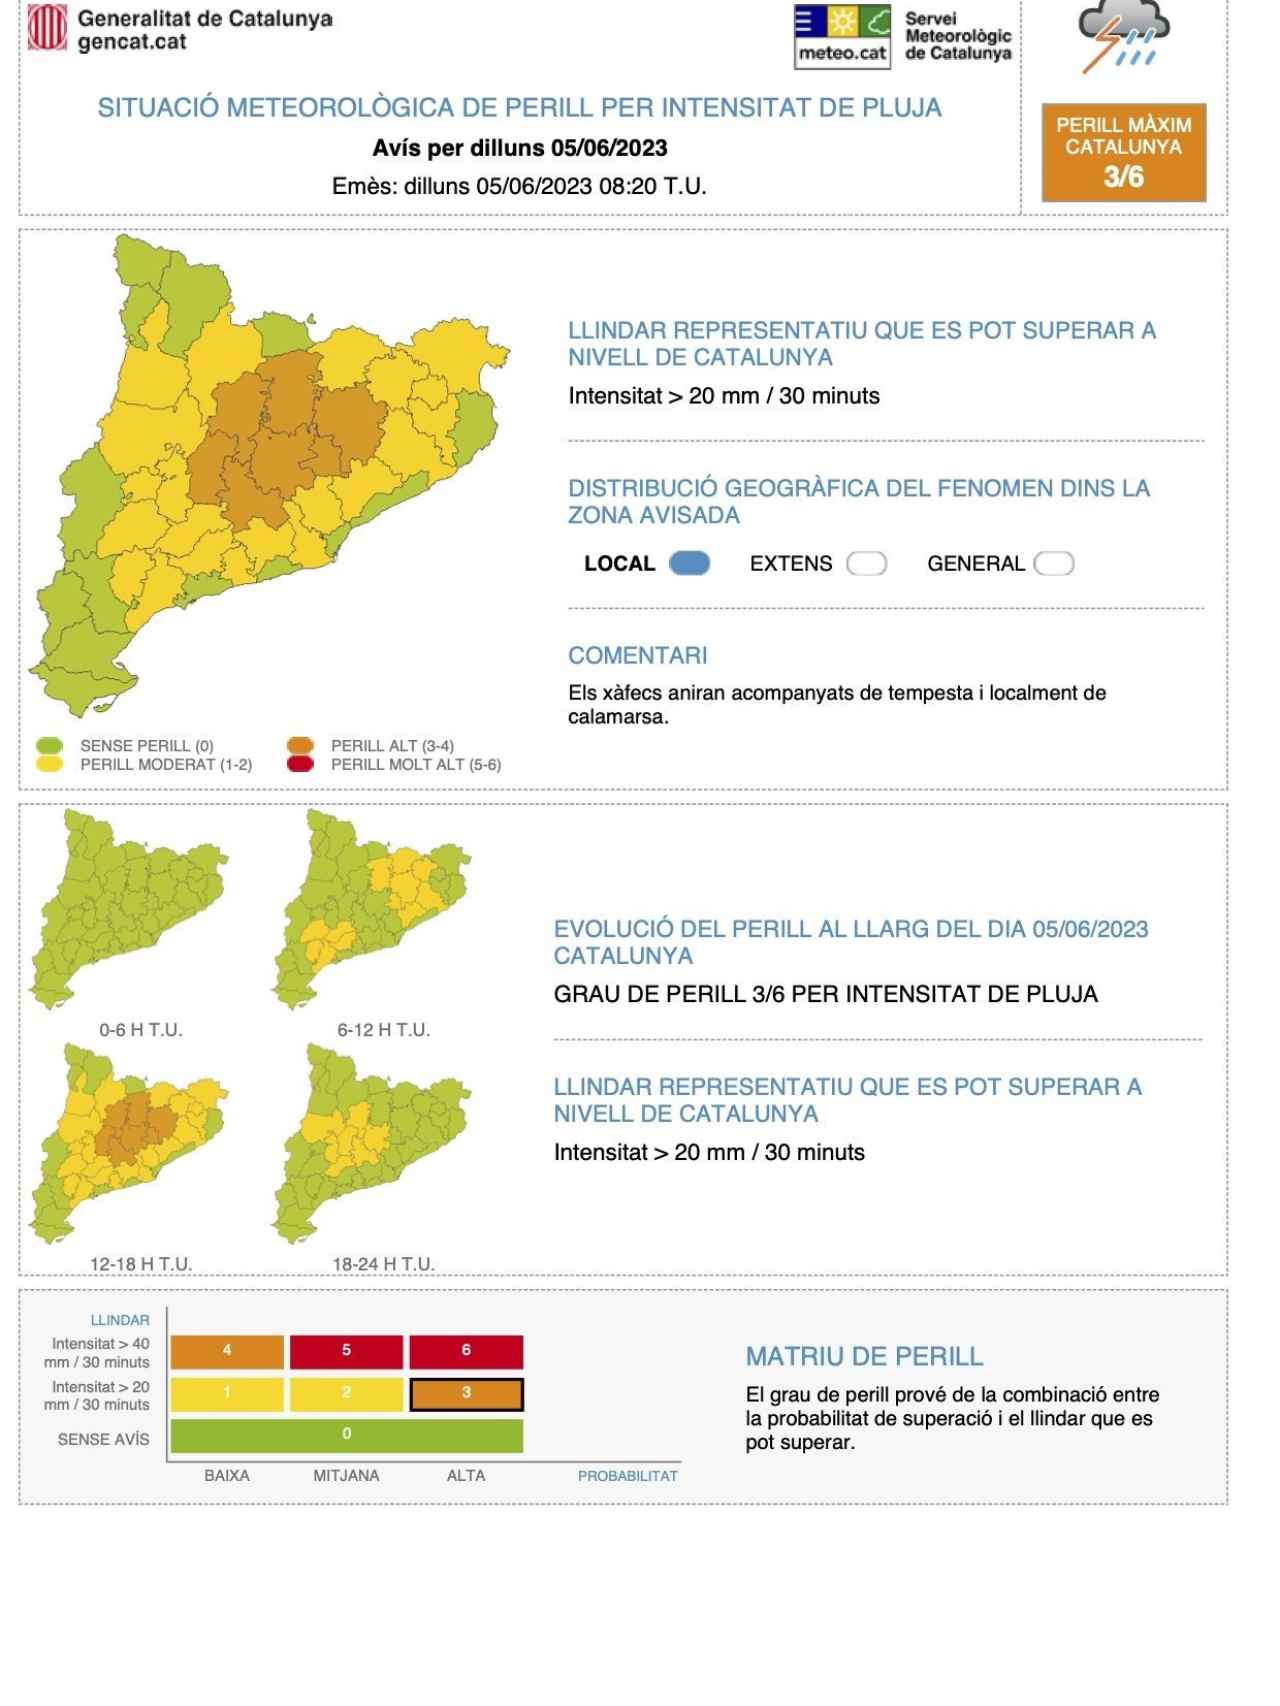 Previsión de lluvias intensas en gran parte del territorio de Cataluña